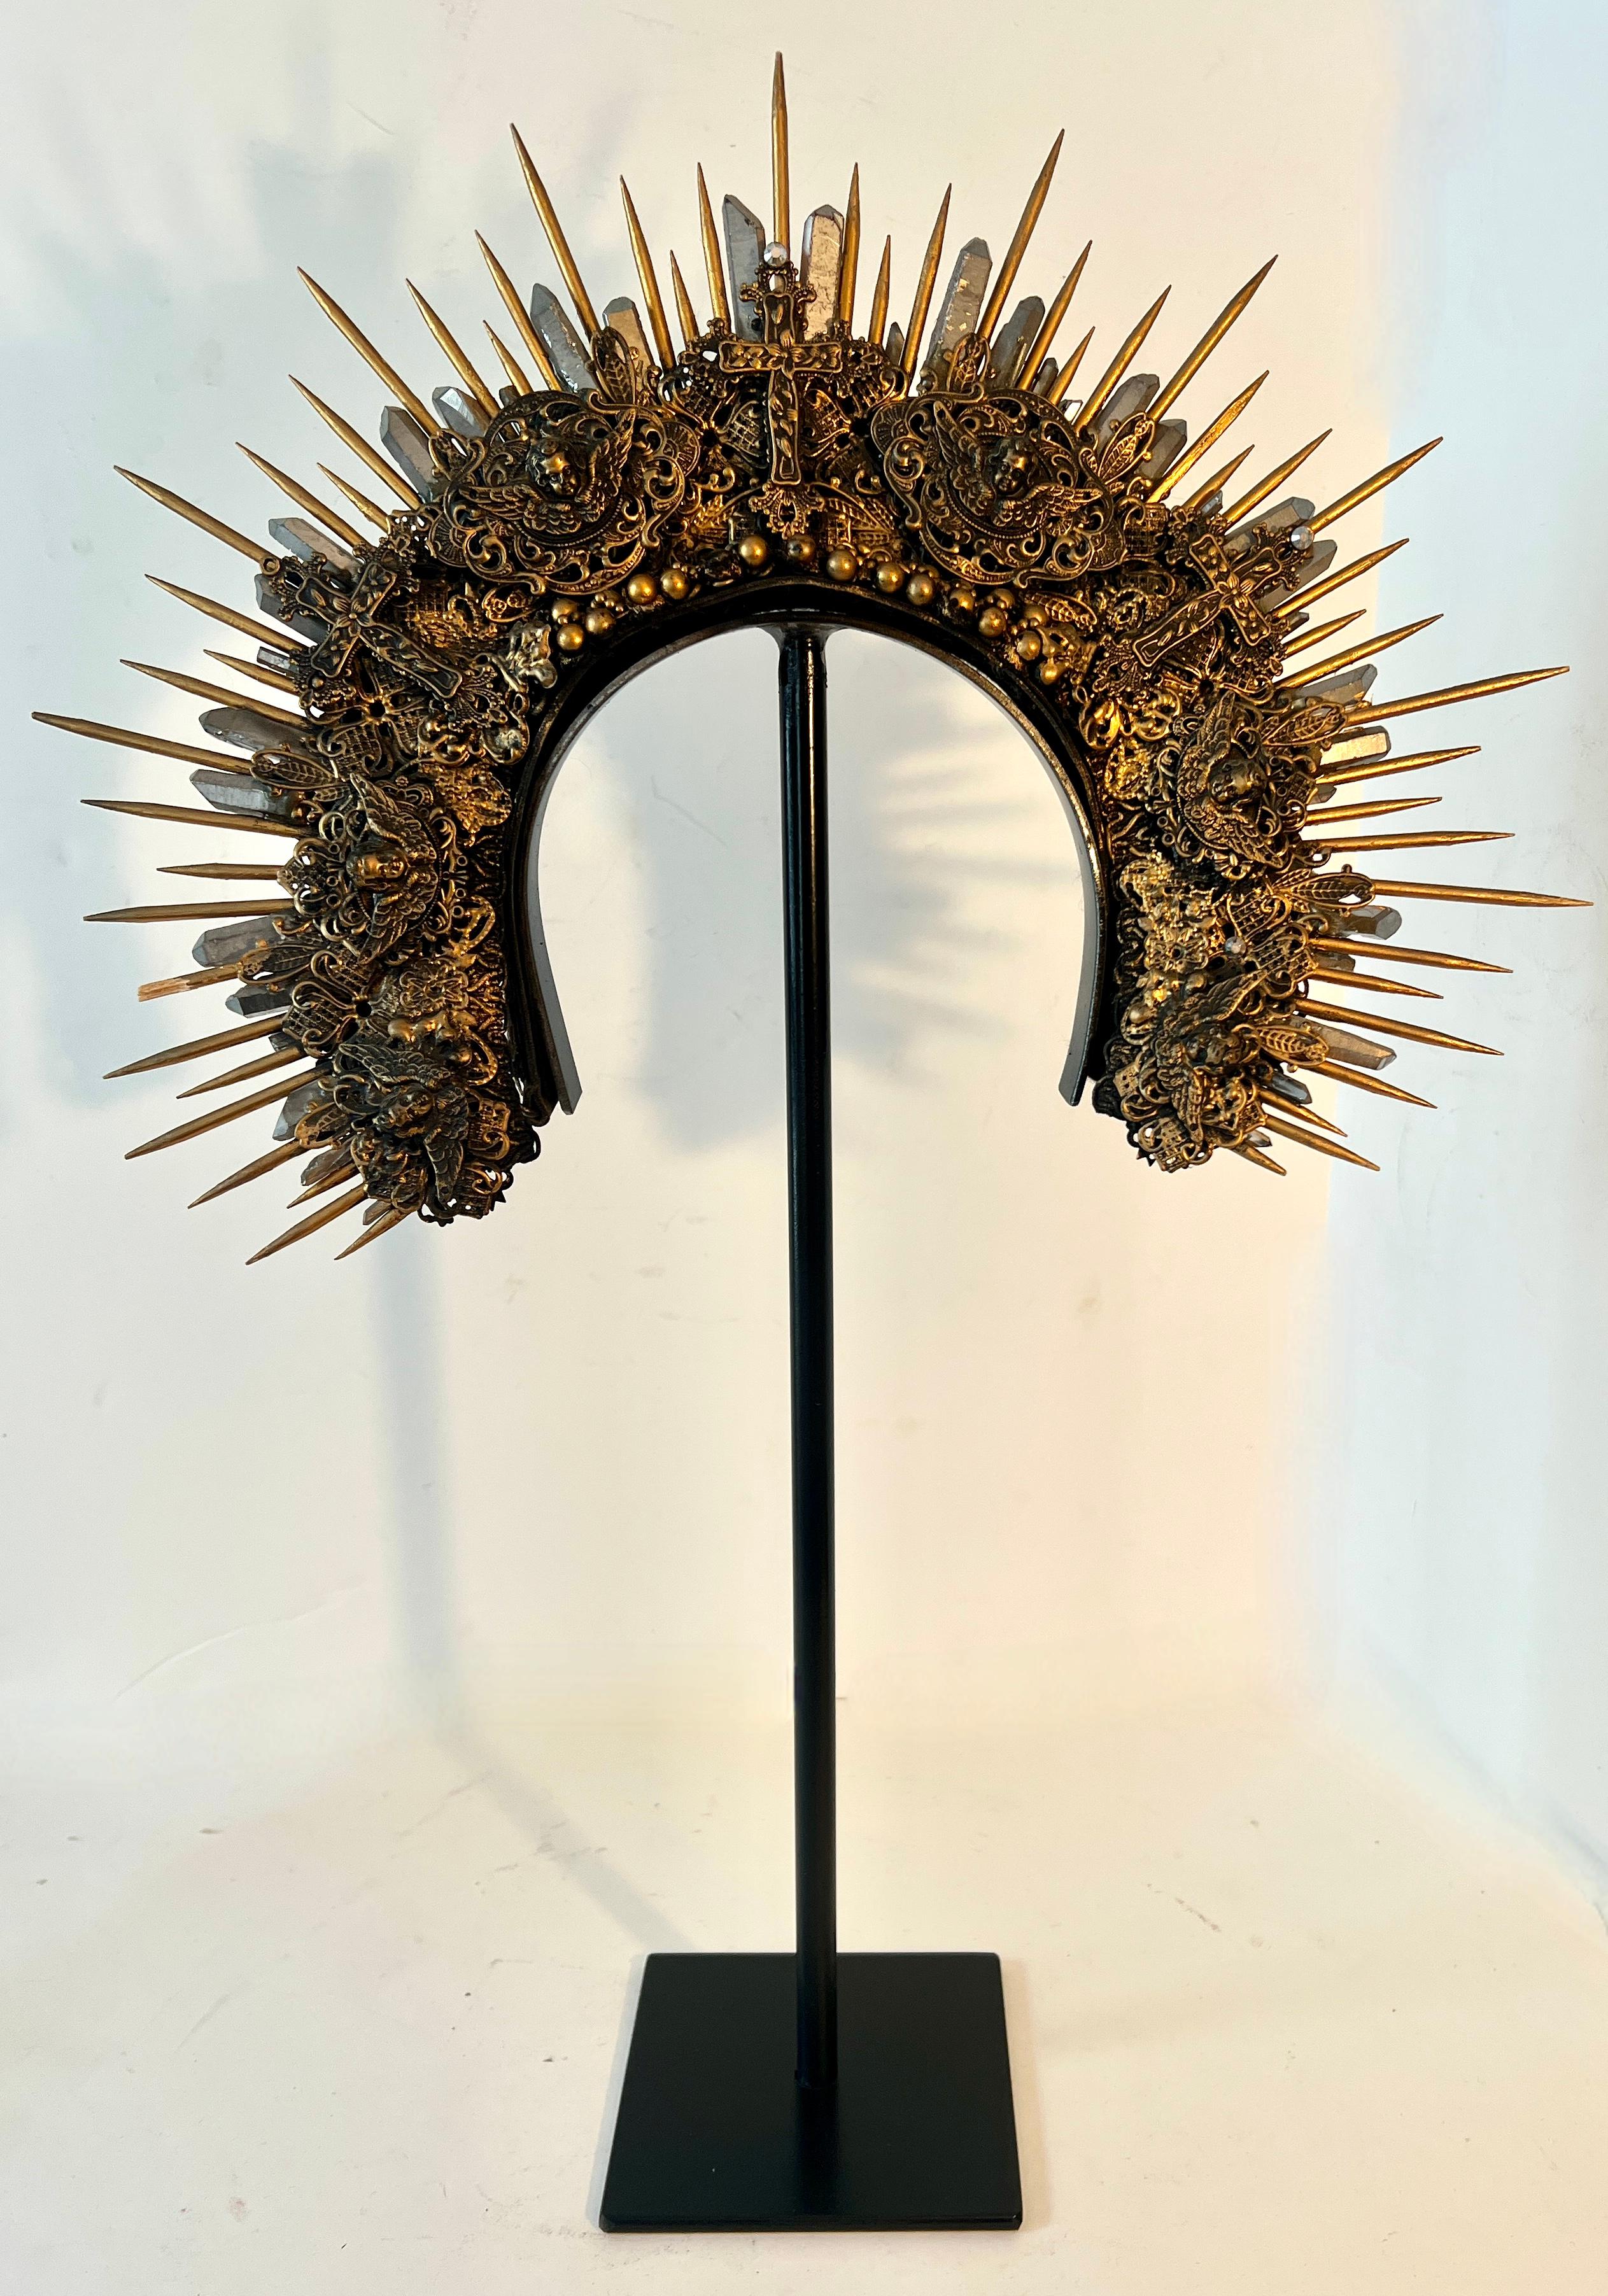 Ein wunderschönes handgefertigtes Kopfkleid aus einer Broadway-Produktion, erworben in NYC.

Das Stück besteht aus Holzspießen, Perlen, Kristallen, Kreuzen und Stoffen - alles in Gold gegossen - und sieht zwar beeindruckend aus, ist aber für eine